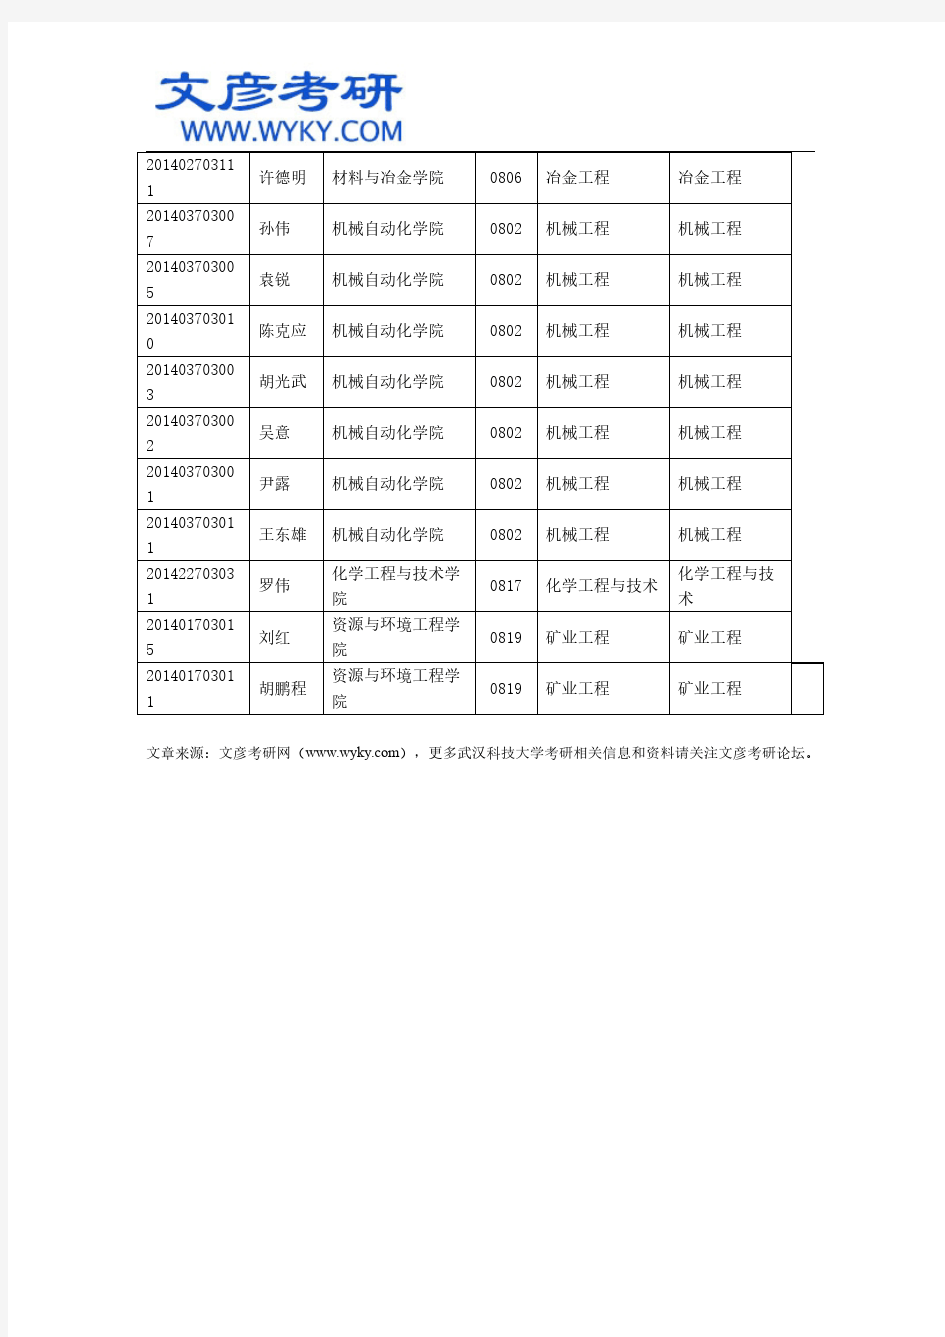 武汉科技大学2014级硕博连读研究生名单公示_武汉科技大学考研